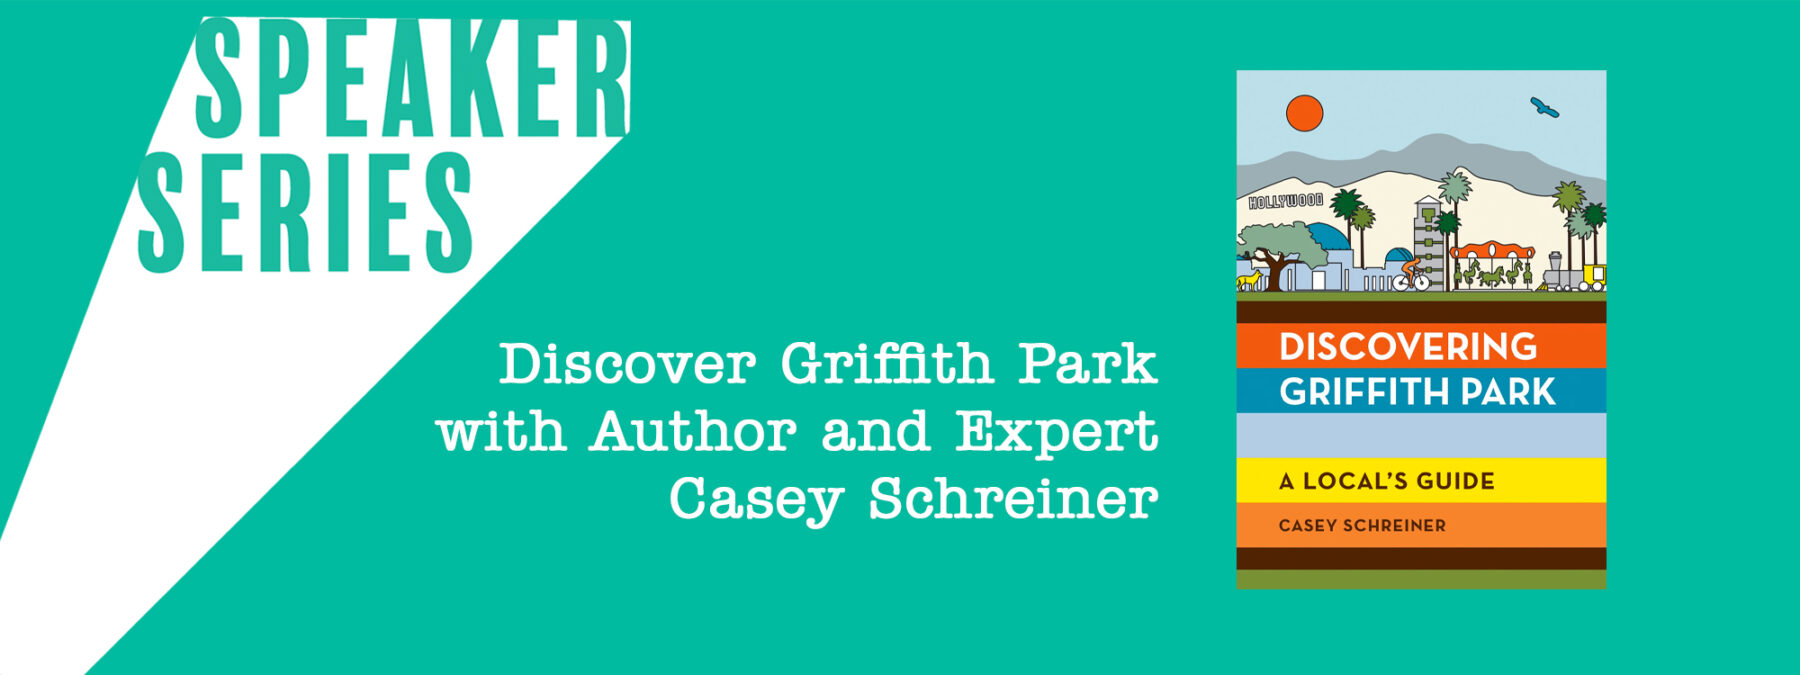 Speaker Series with Casey Schreiner Modern Hiker